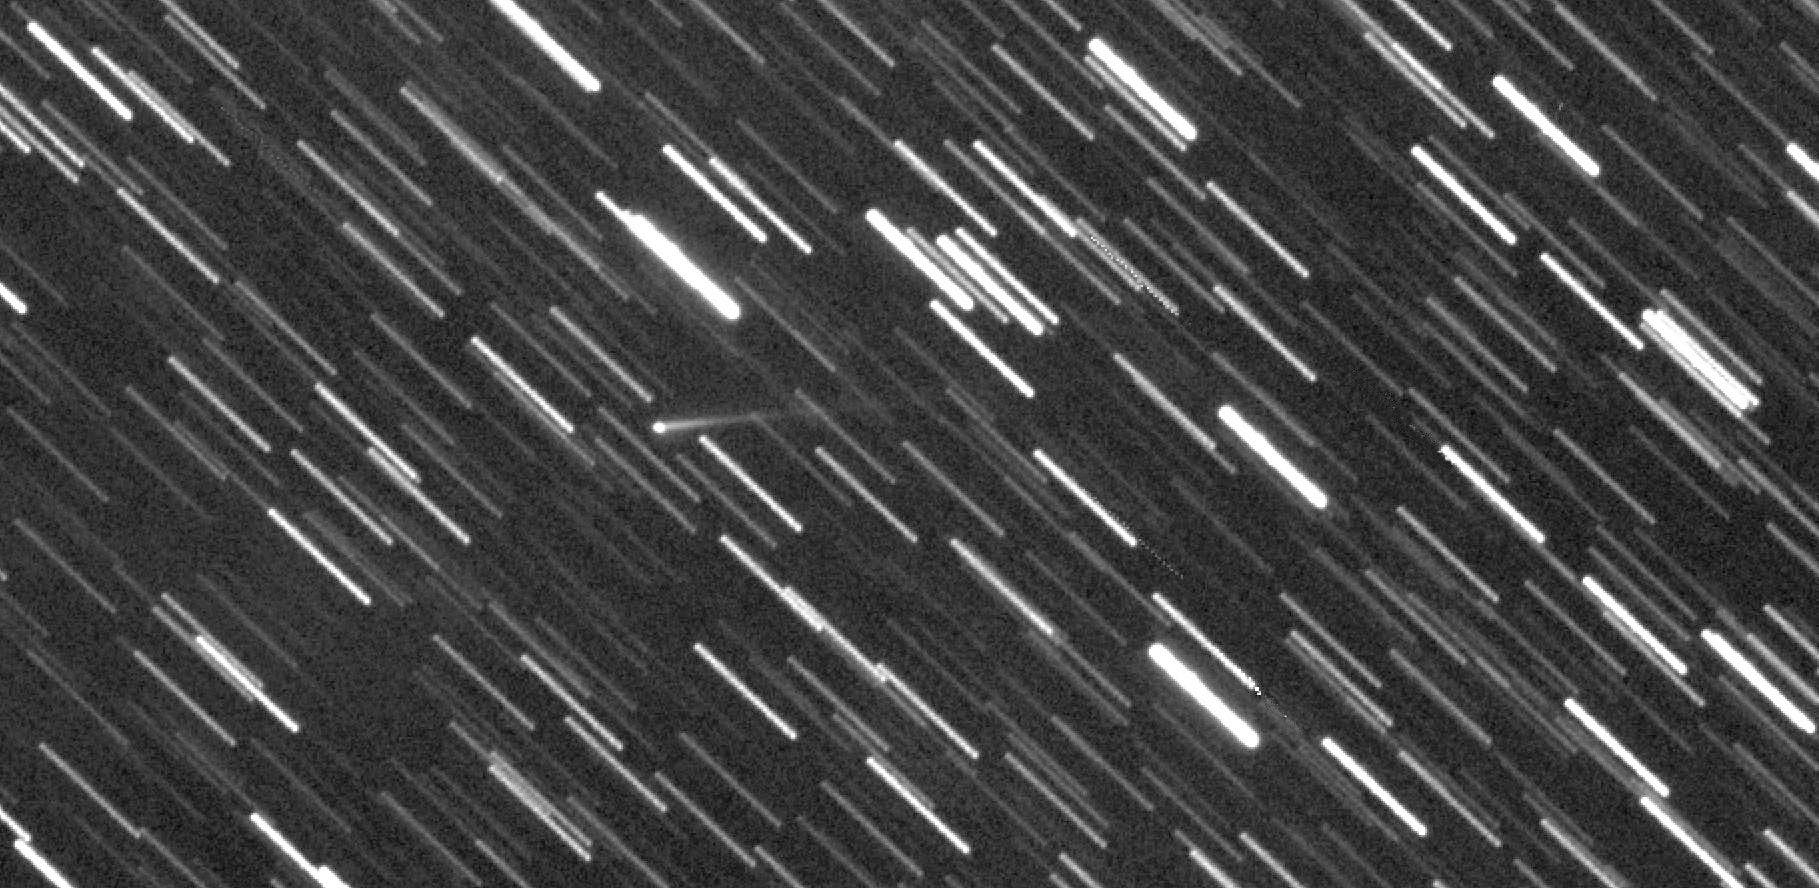 Kleinplanet (65803) Didymos, ein Monat nach dem Impakt